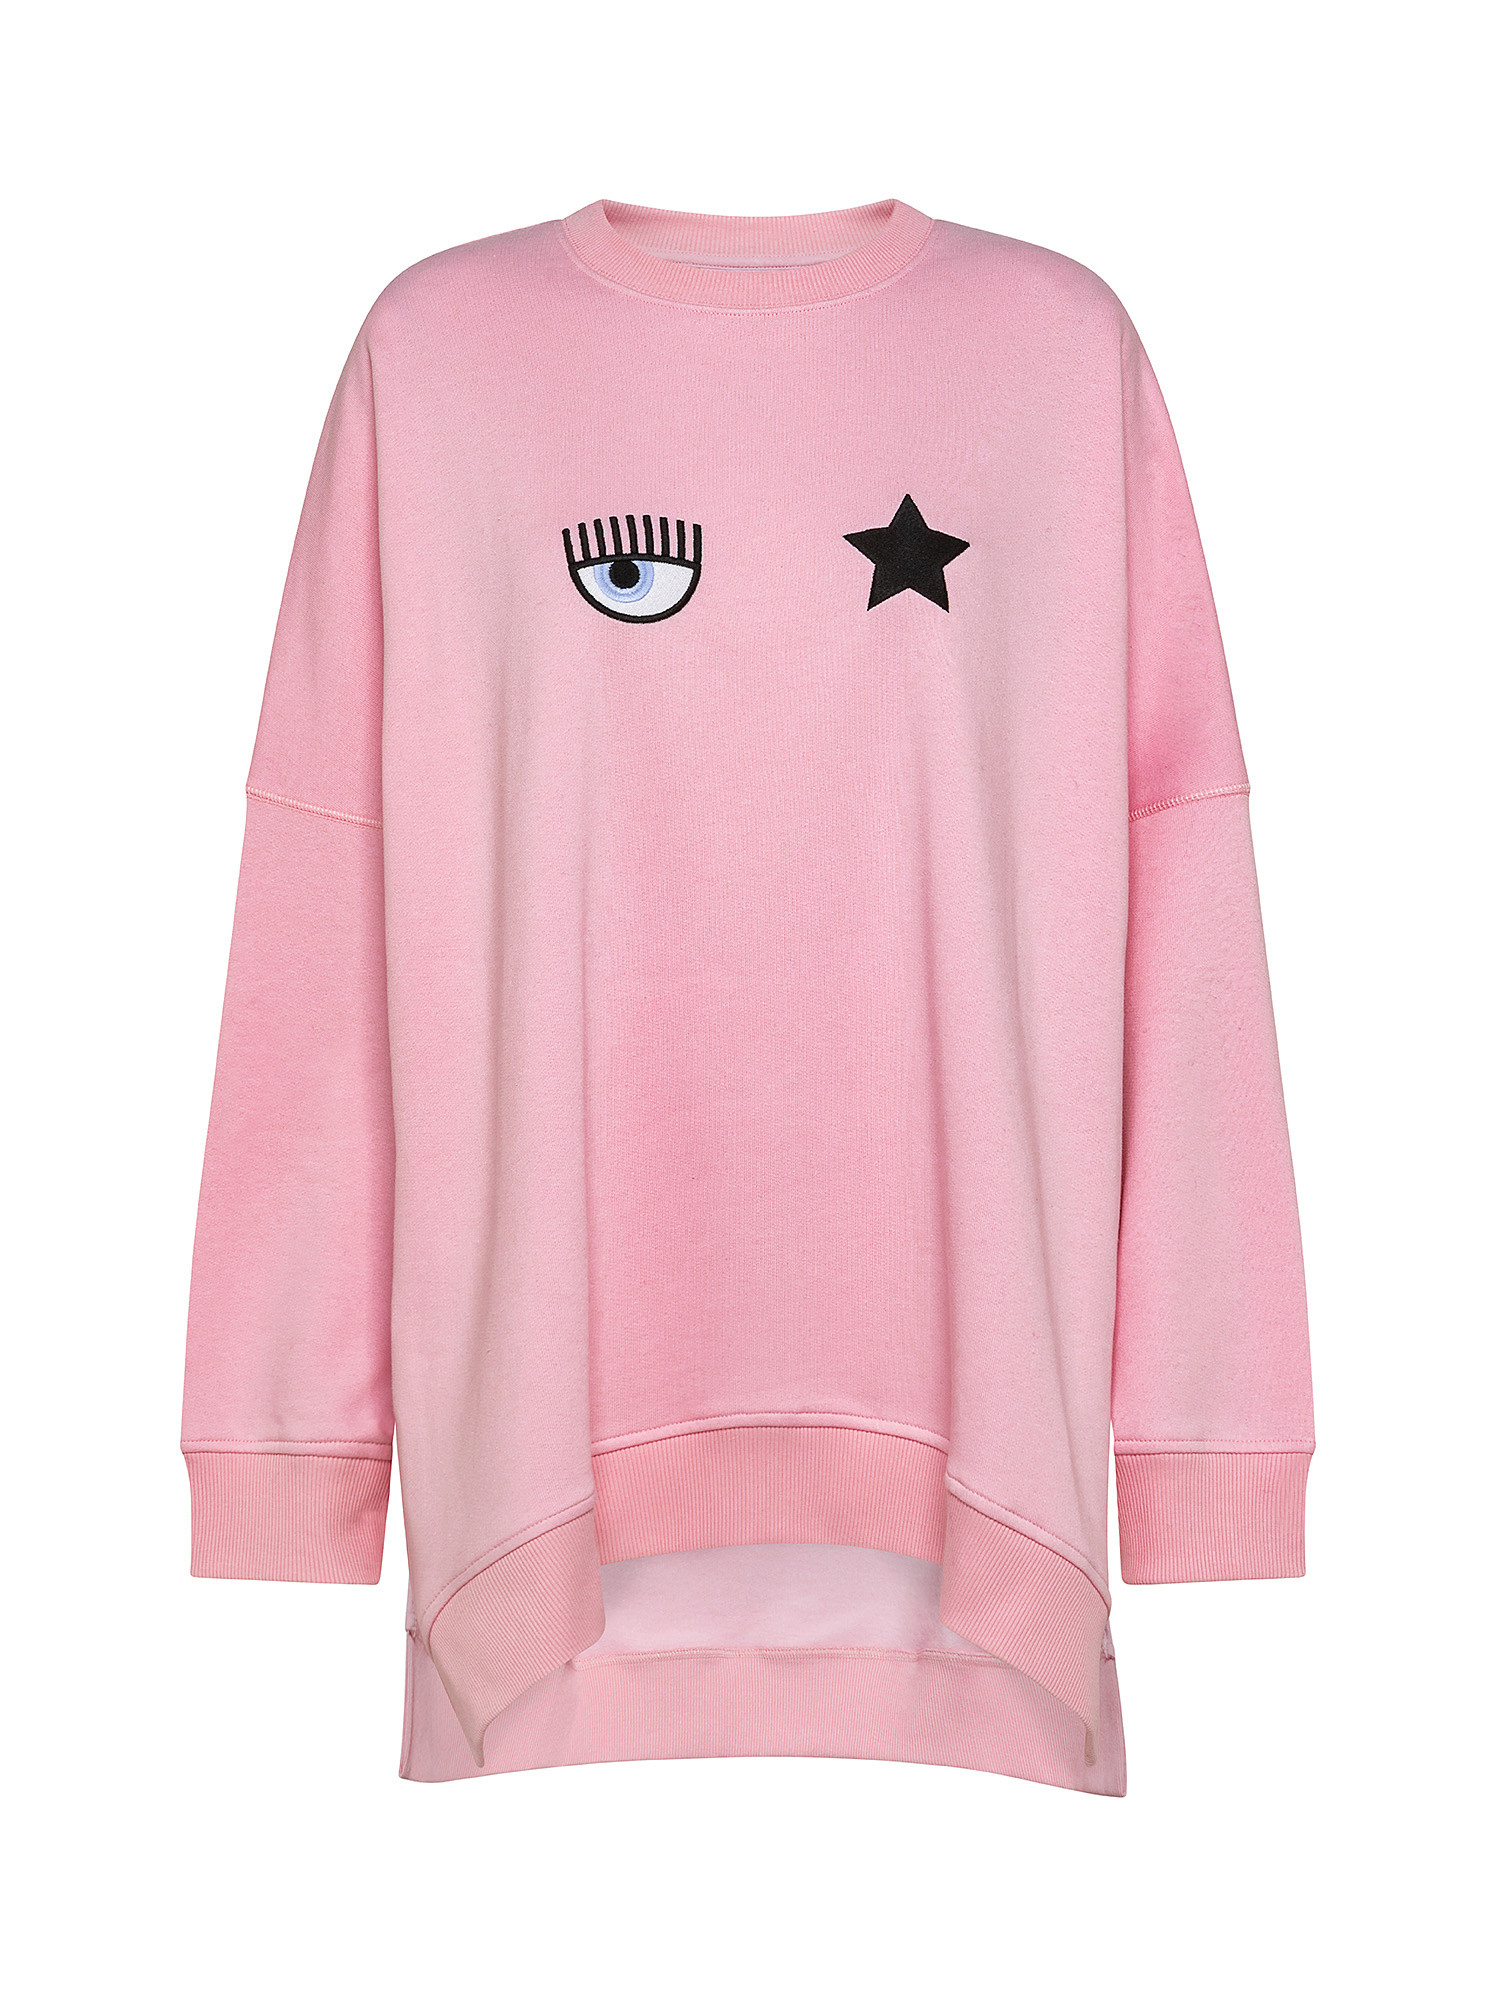 Eye Star sweatshirt, Pink, large image number 0